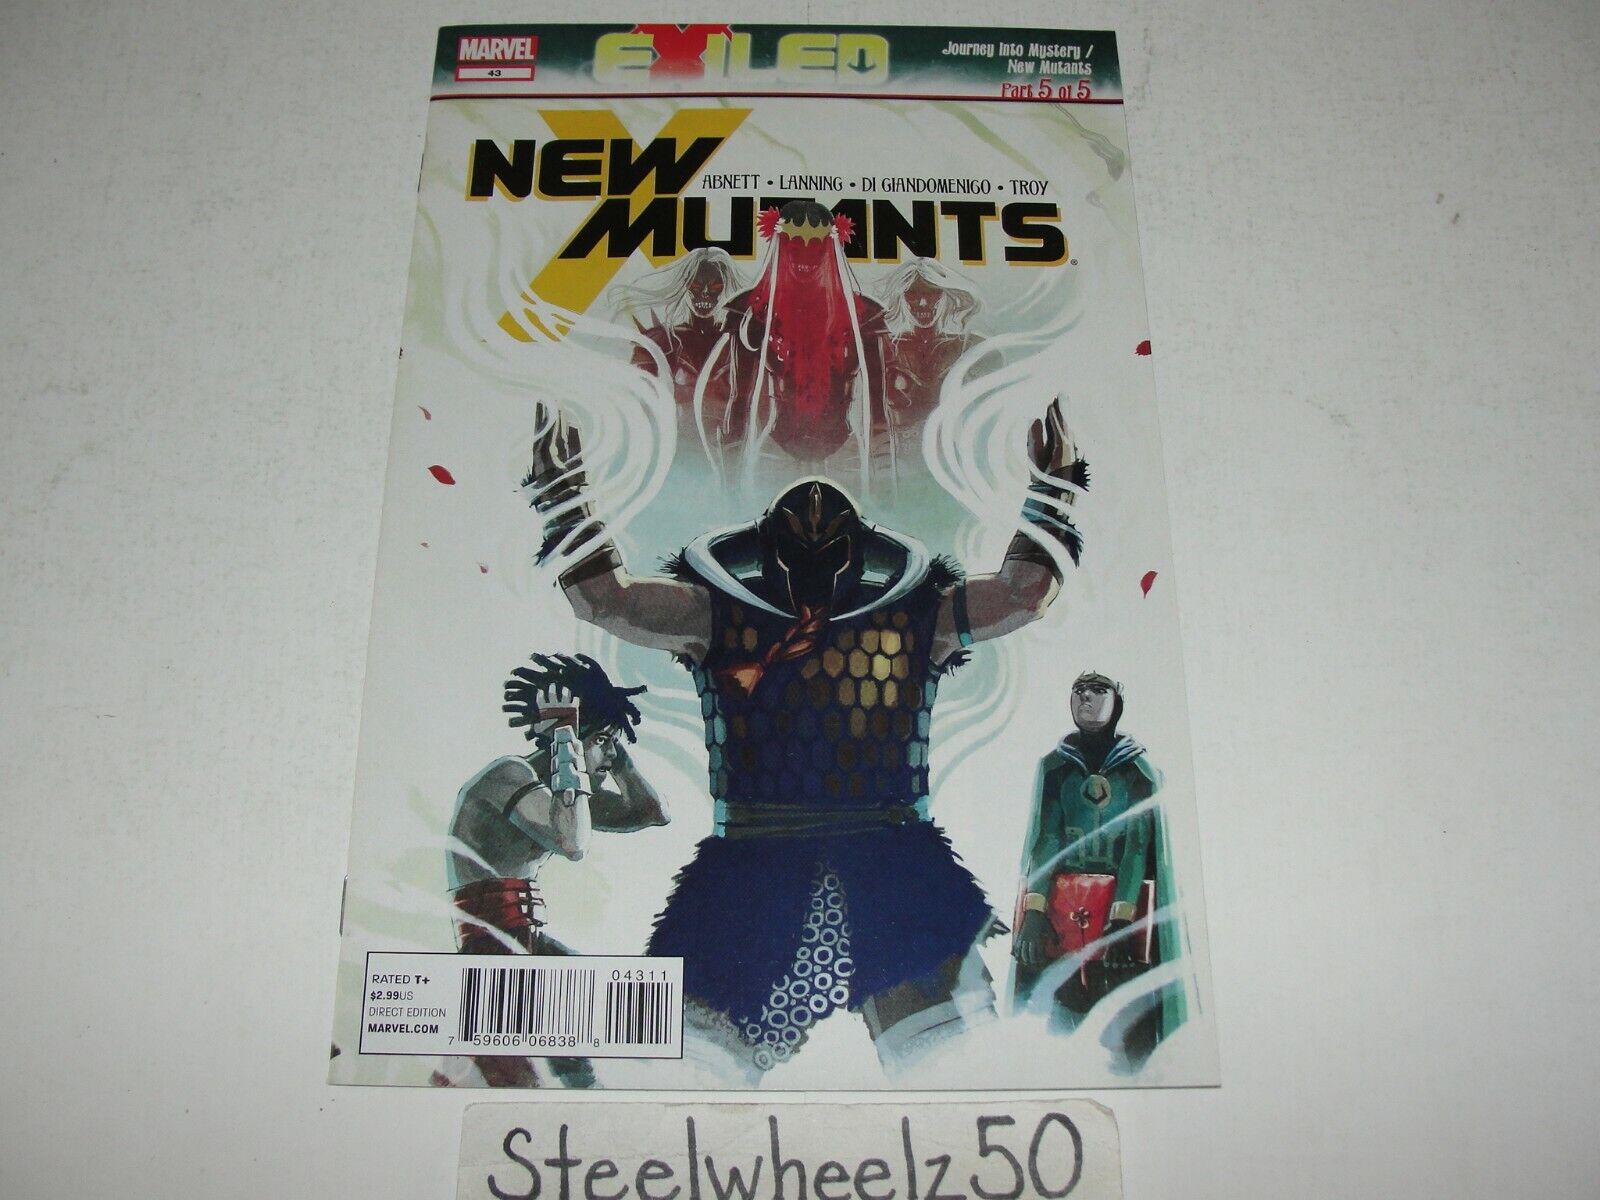 New Mutants #43 Comic Marvel 2012 3rd Series Exiled Loki Dan Abnett Andy Lanning